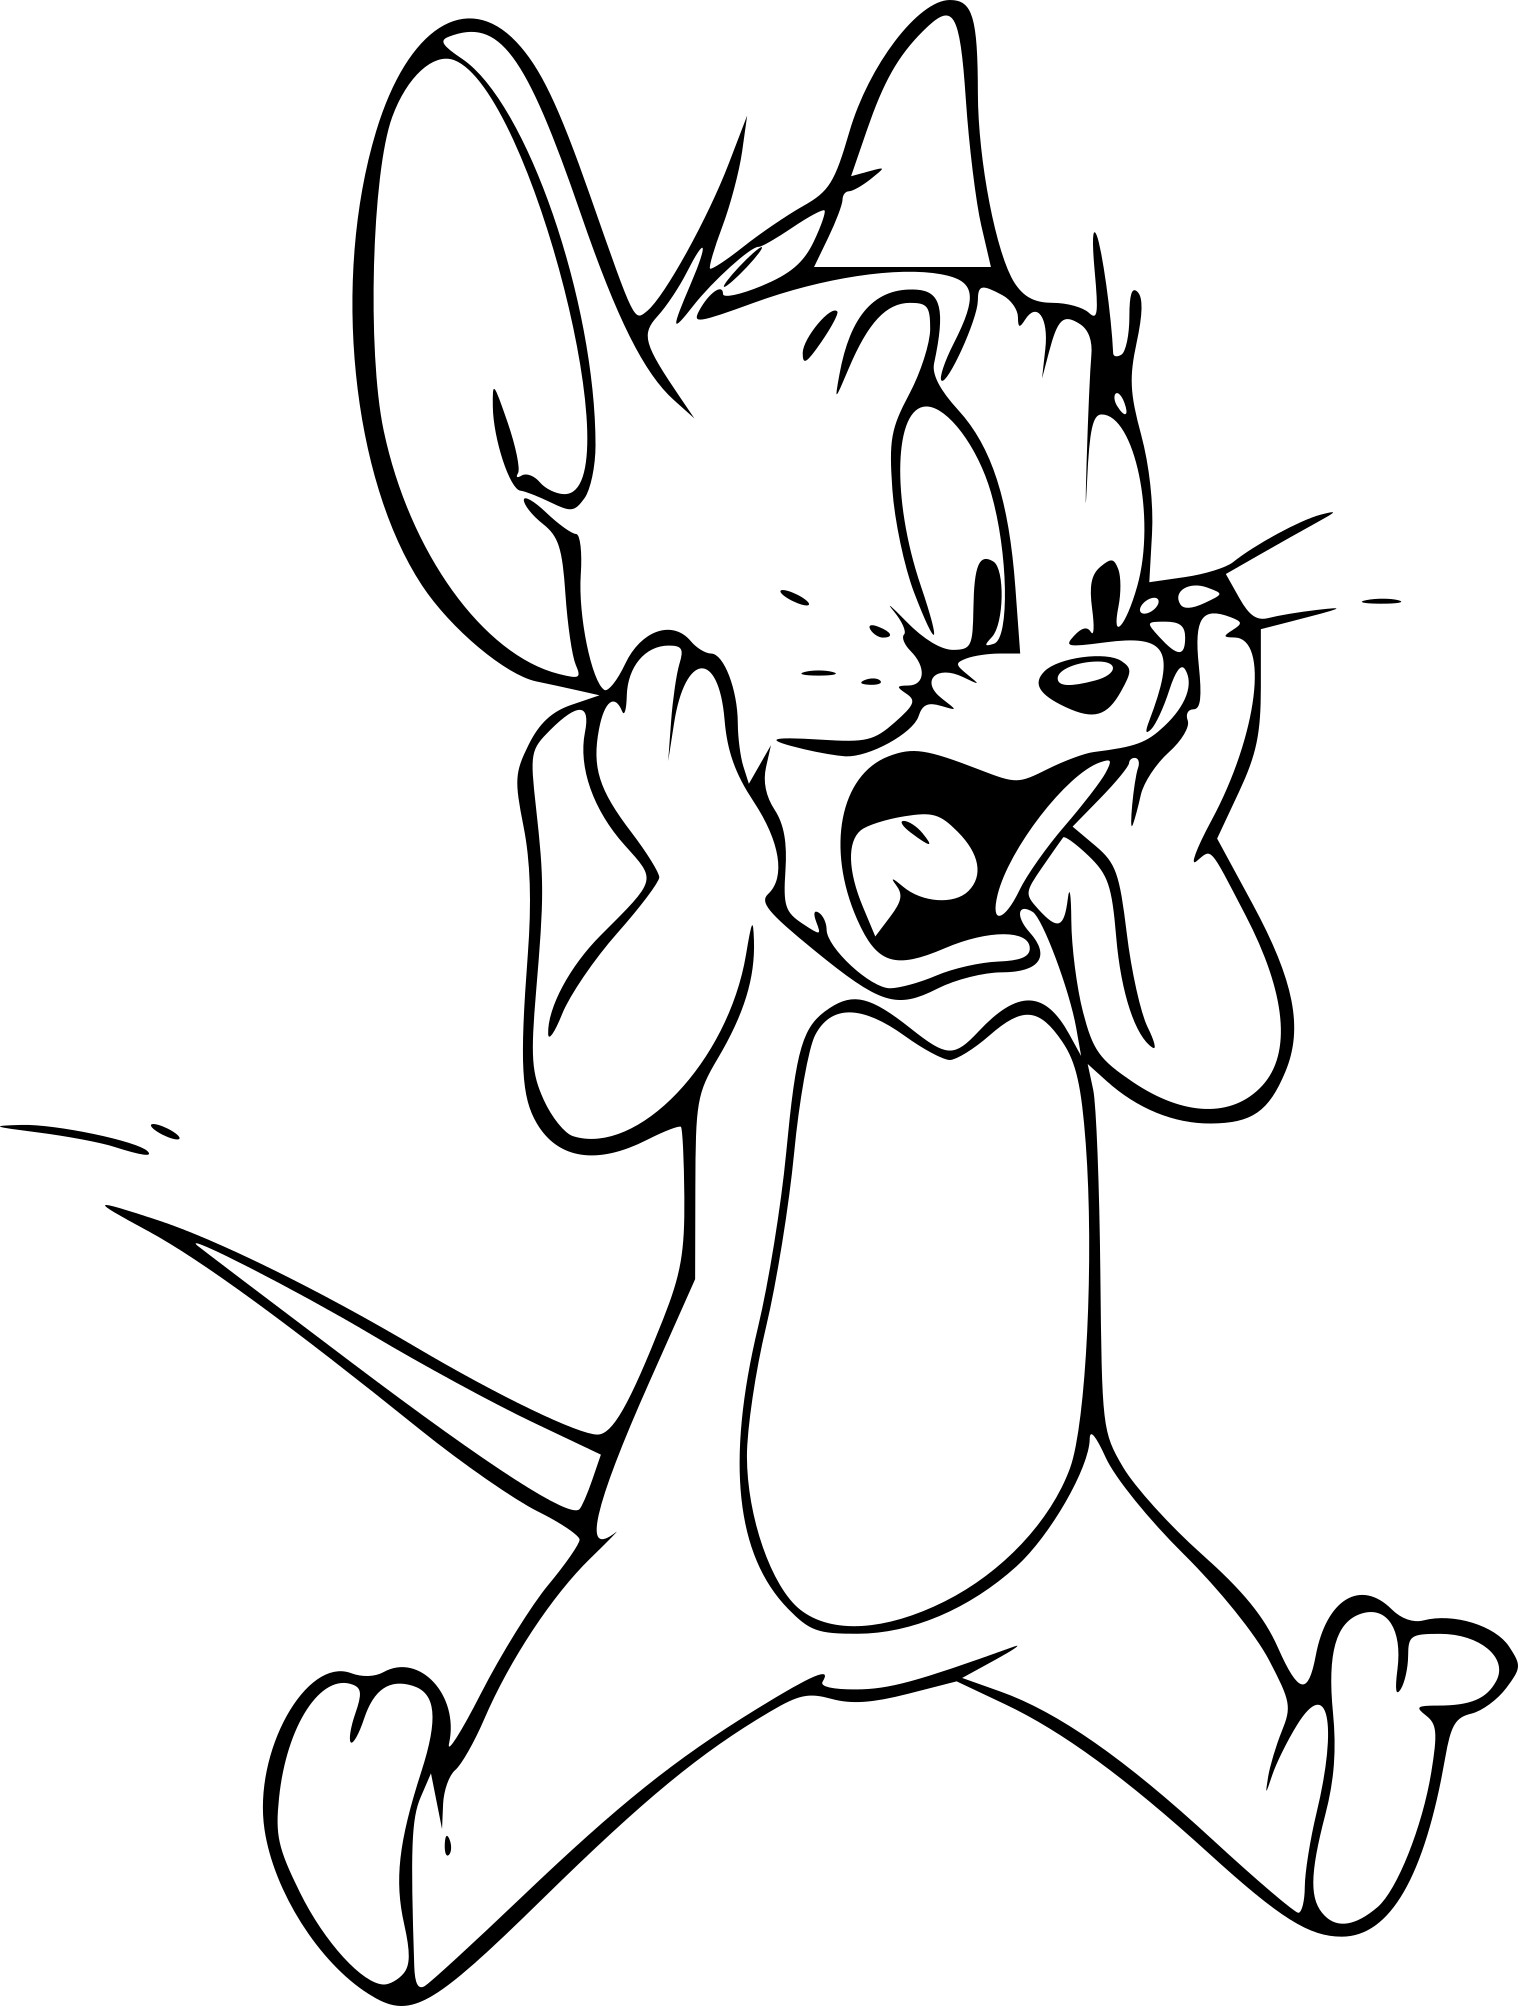 Disegno di Jerry di Tom e Jerry da colorare